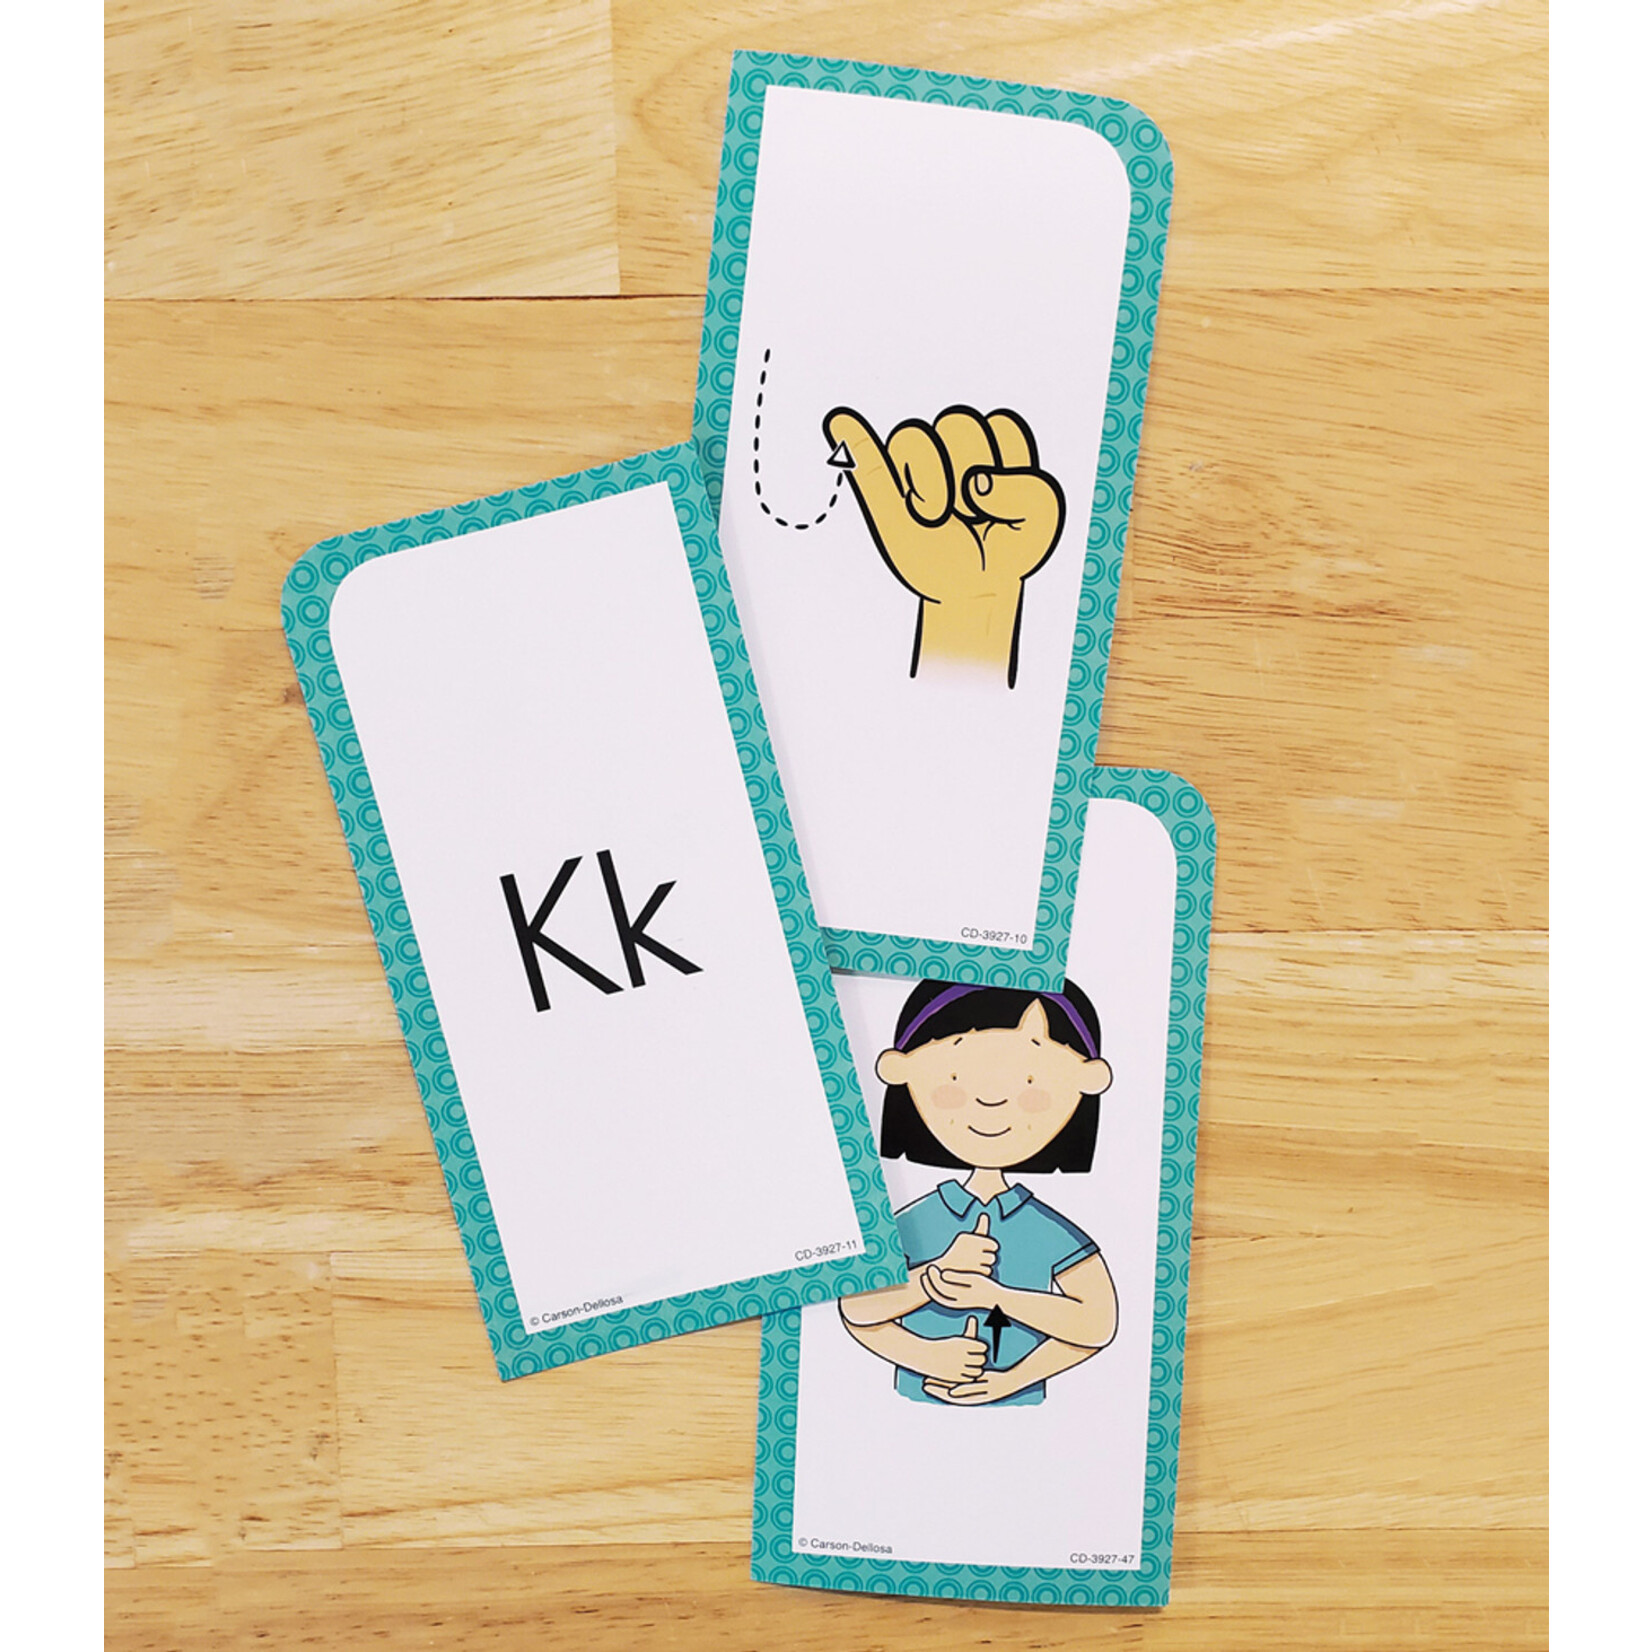 CARSON DELLOSA PUBLISHING CO Sign Language Flash Cards Grade PK-8